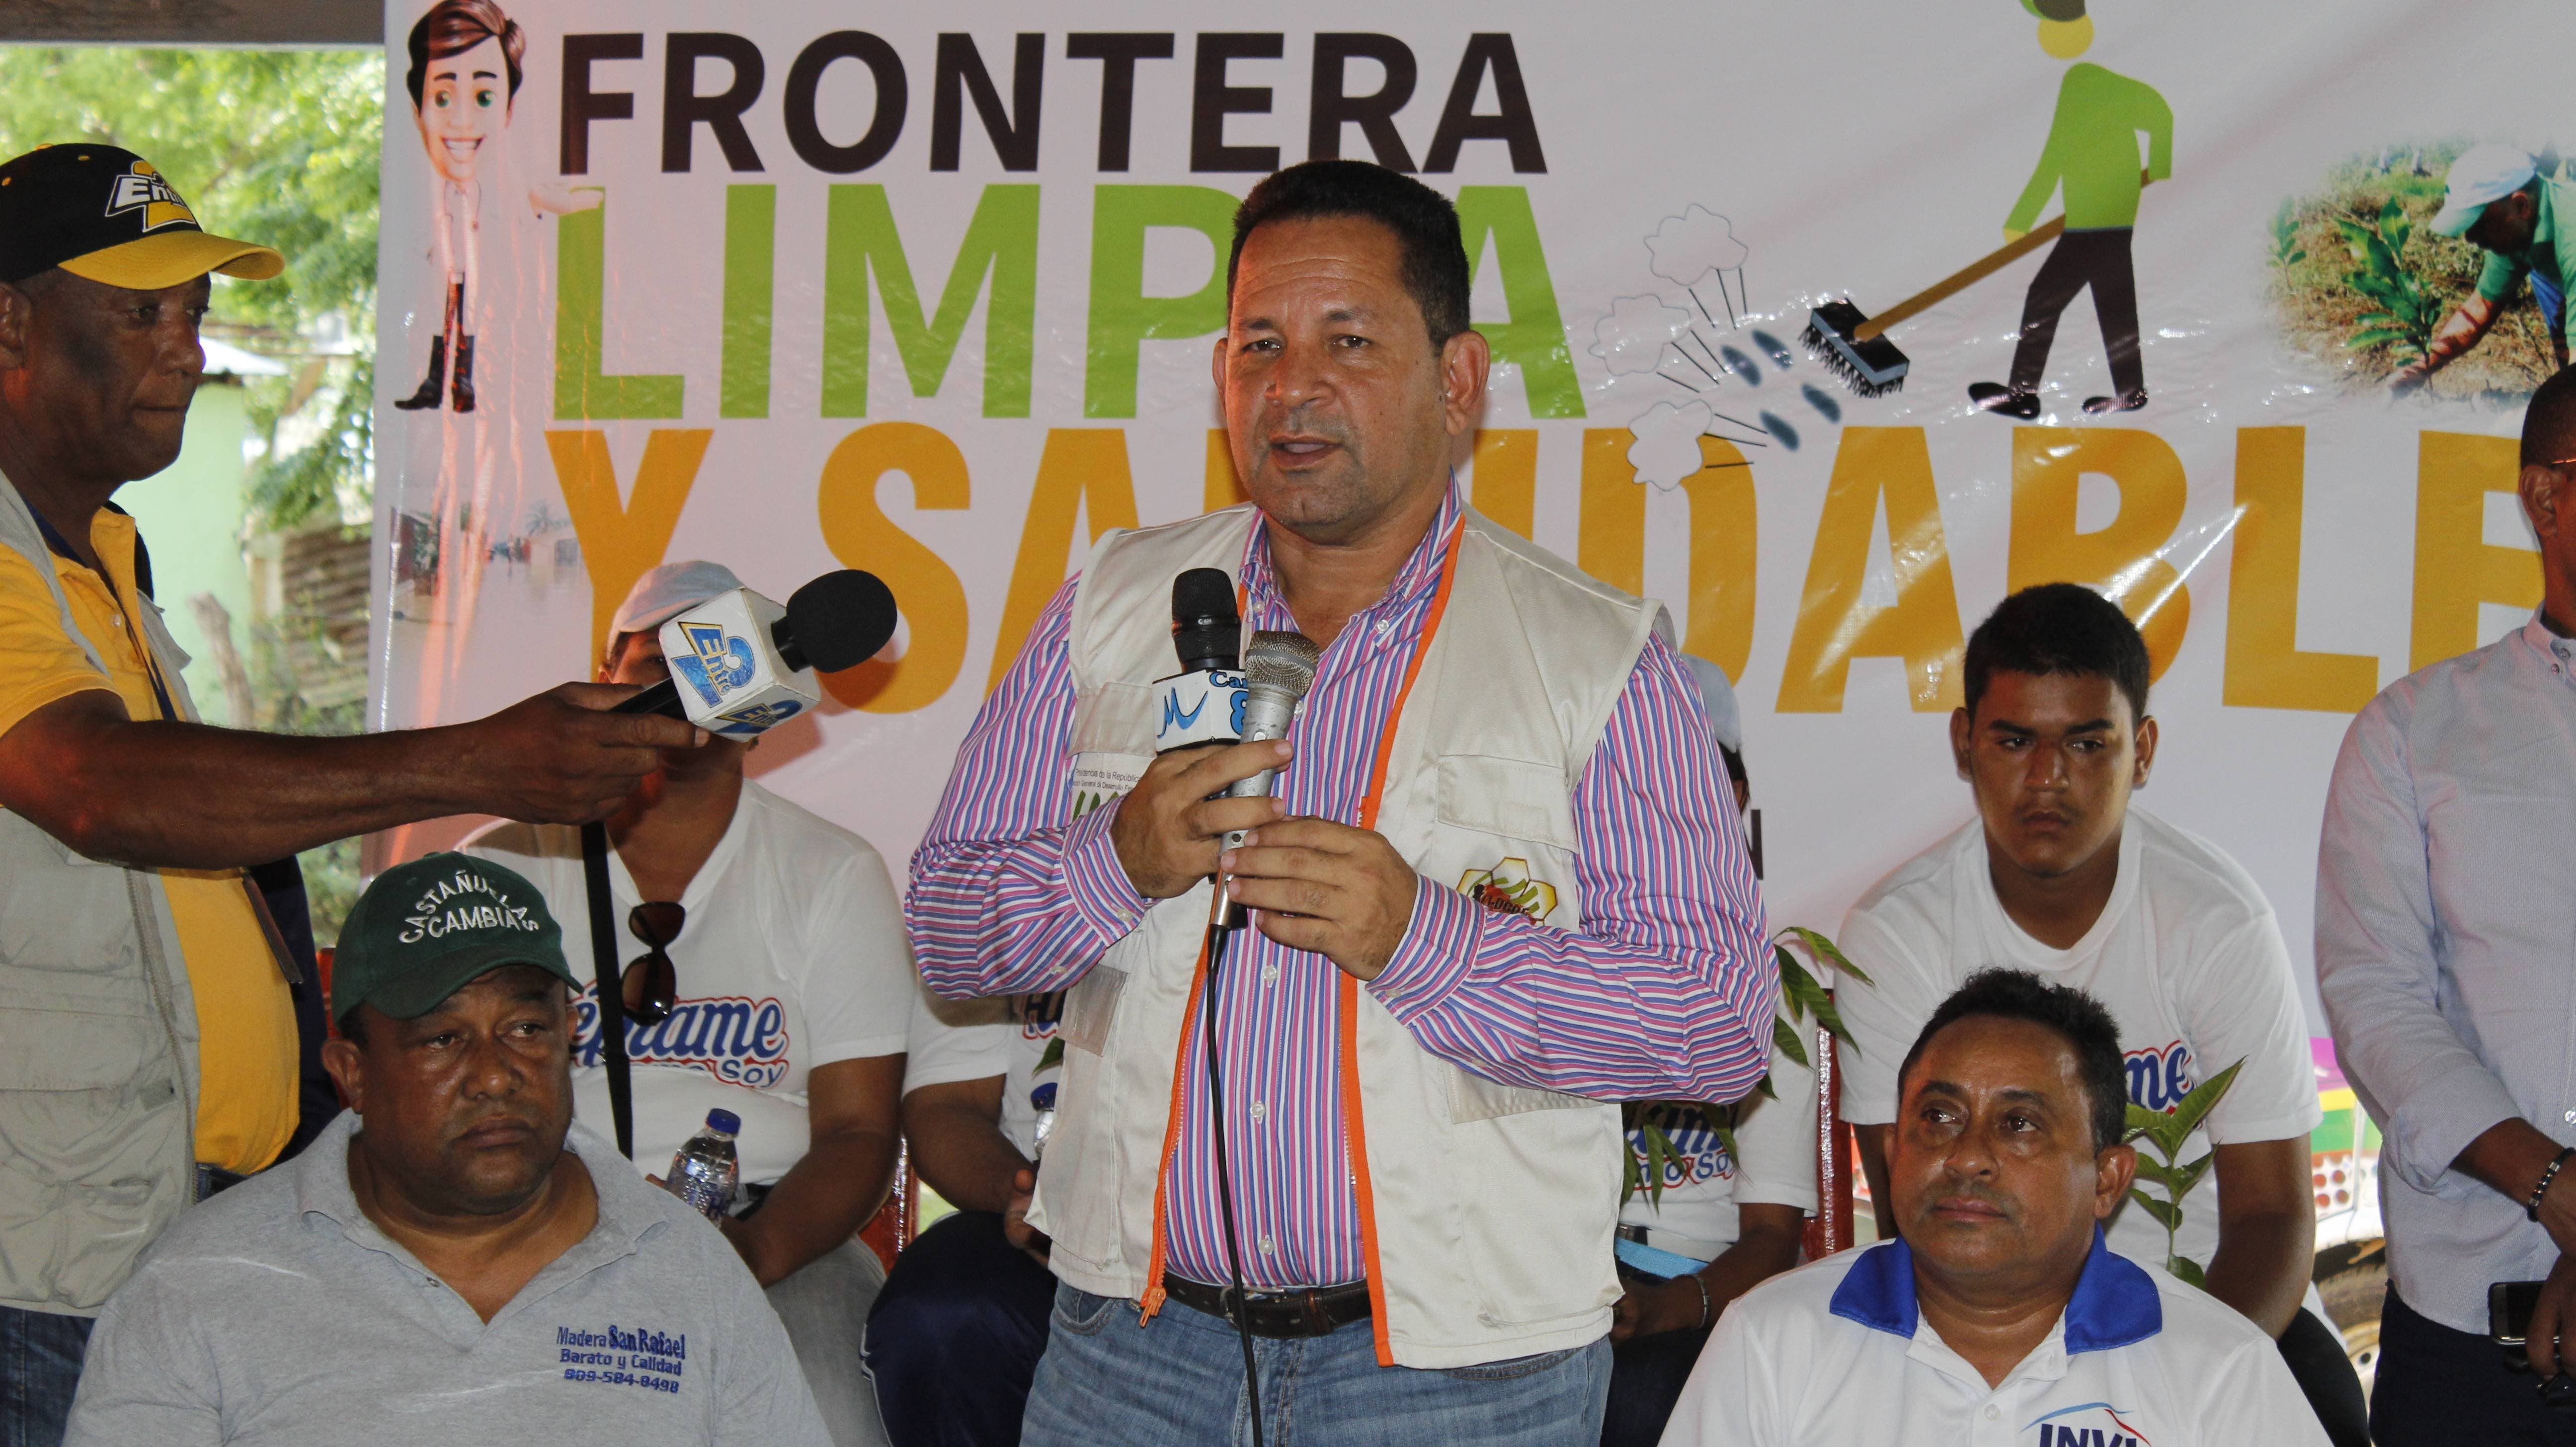 Frontera Limpia y Saludable cambia la cara de los residentes de Castañuelas